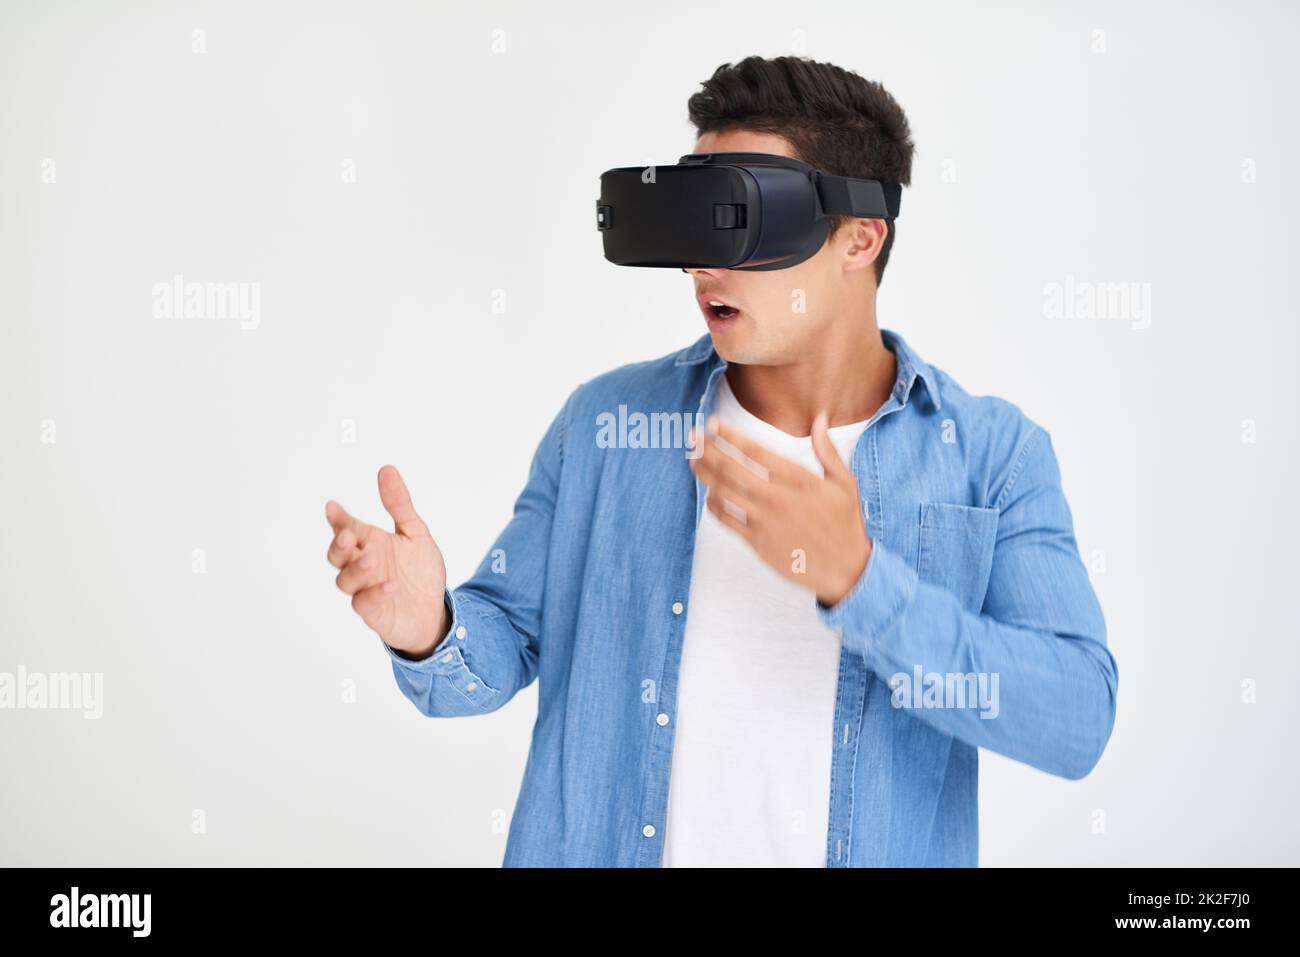 Échappez-vous dans le cyberespace. Prise de vue en studio d'un jeune homme qui a l'air stupéfié tout en portant un casque VR sur fond blanc. Banque D'Images